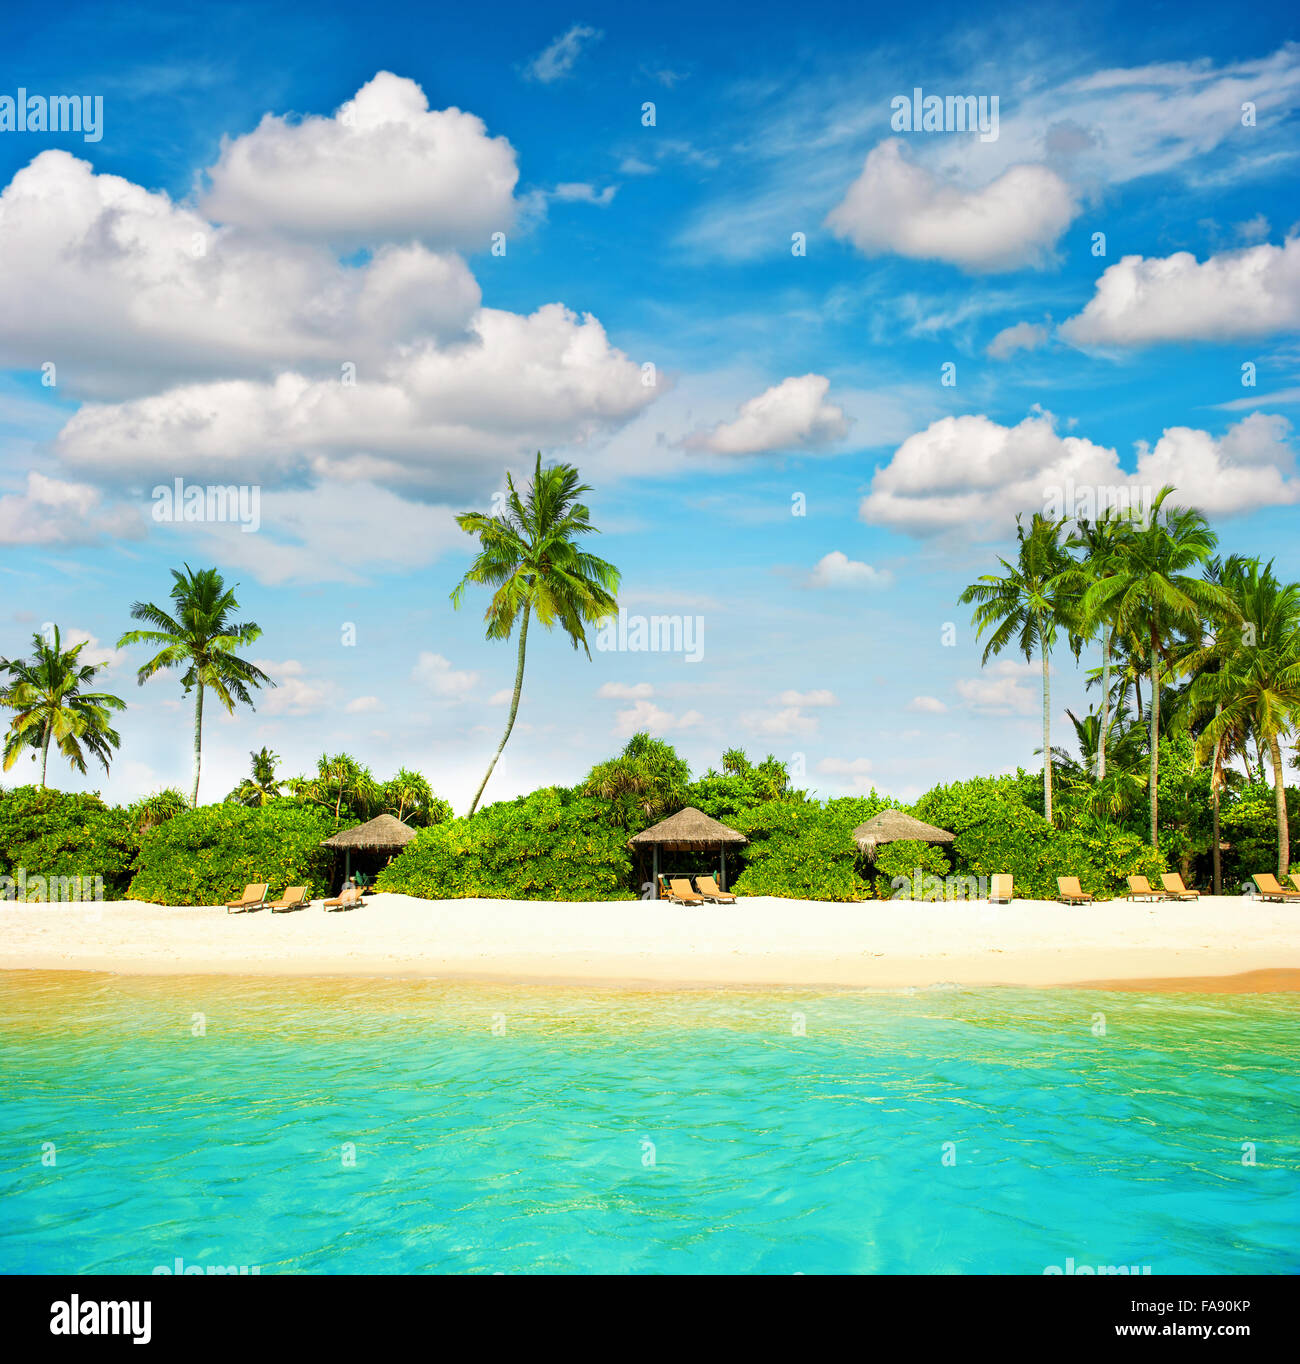 Plage de sable fin. Ciel bleu. Paradise Island avec palmiers Banque D'Images